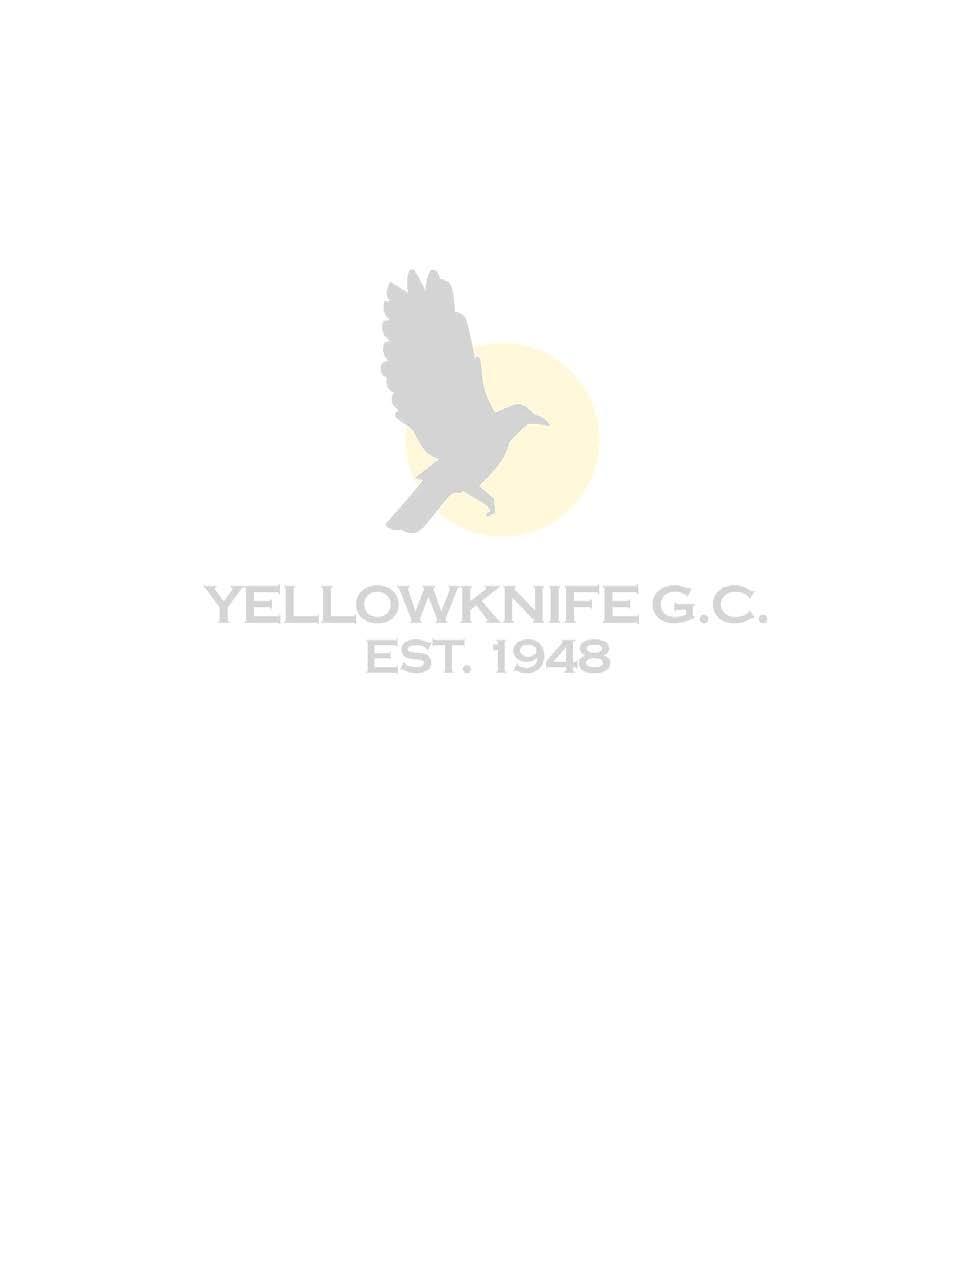 Yellowknife Golf Club Box 388 Yellowknife, NT X1A 2N3 www.yellowknifegolf.